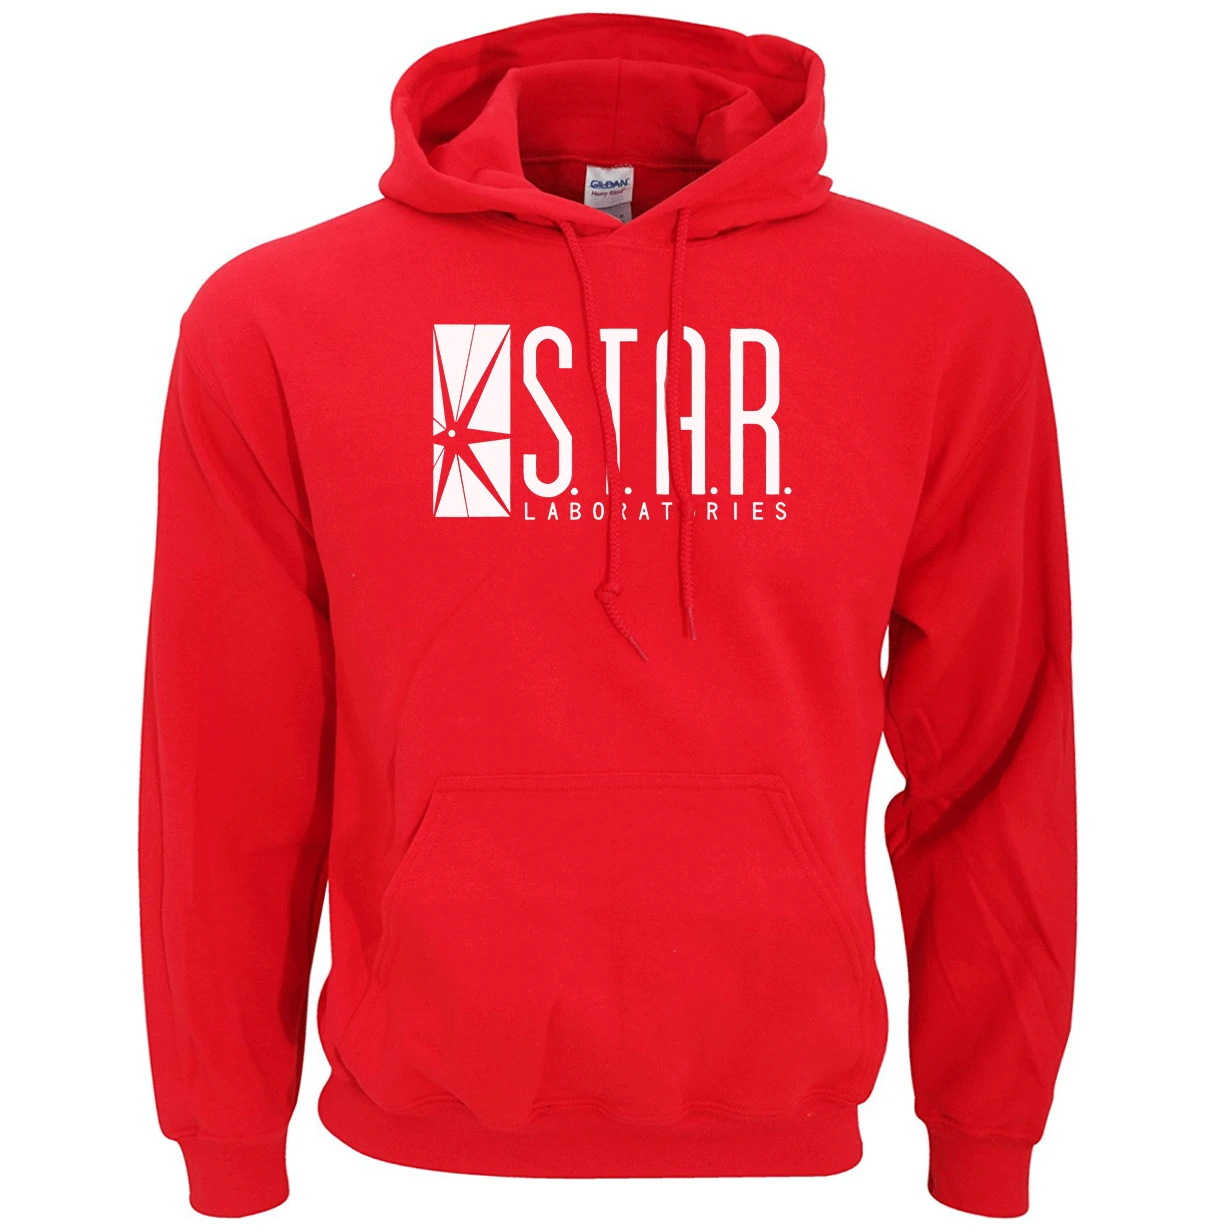 Горячая Распродажа STAR S.T.A.R. labs модная брендовая одежда, теплая флисовая Высококачественная Мужская толстовка с капюшоном, весенне-зимние стильные мужские толстовки - Цвет: Красный